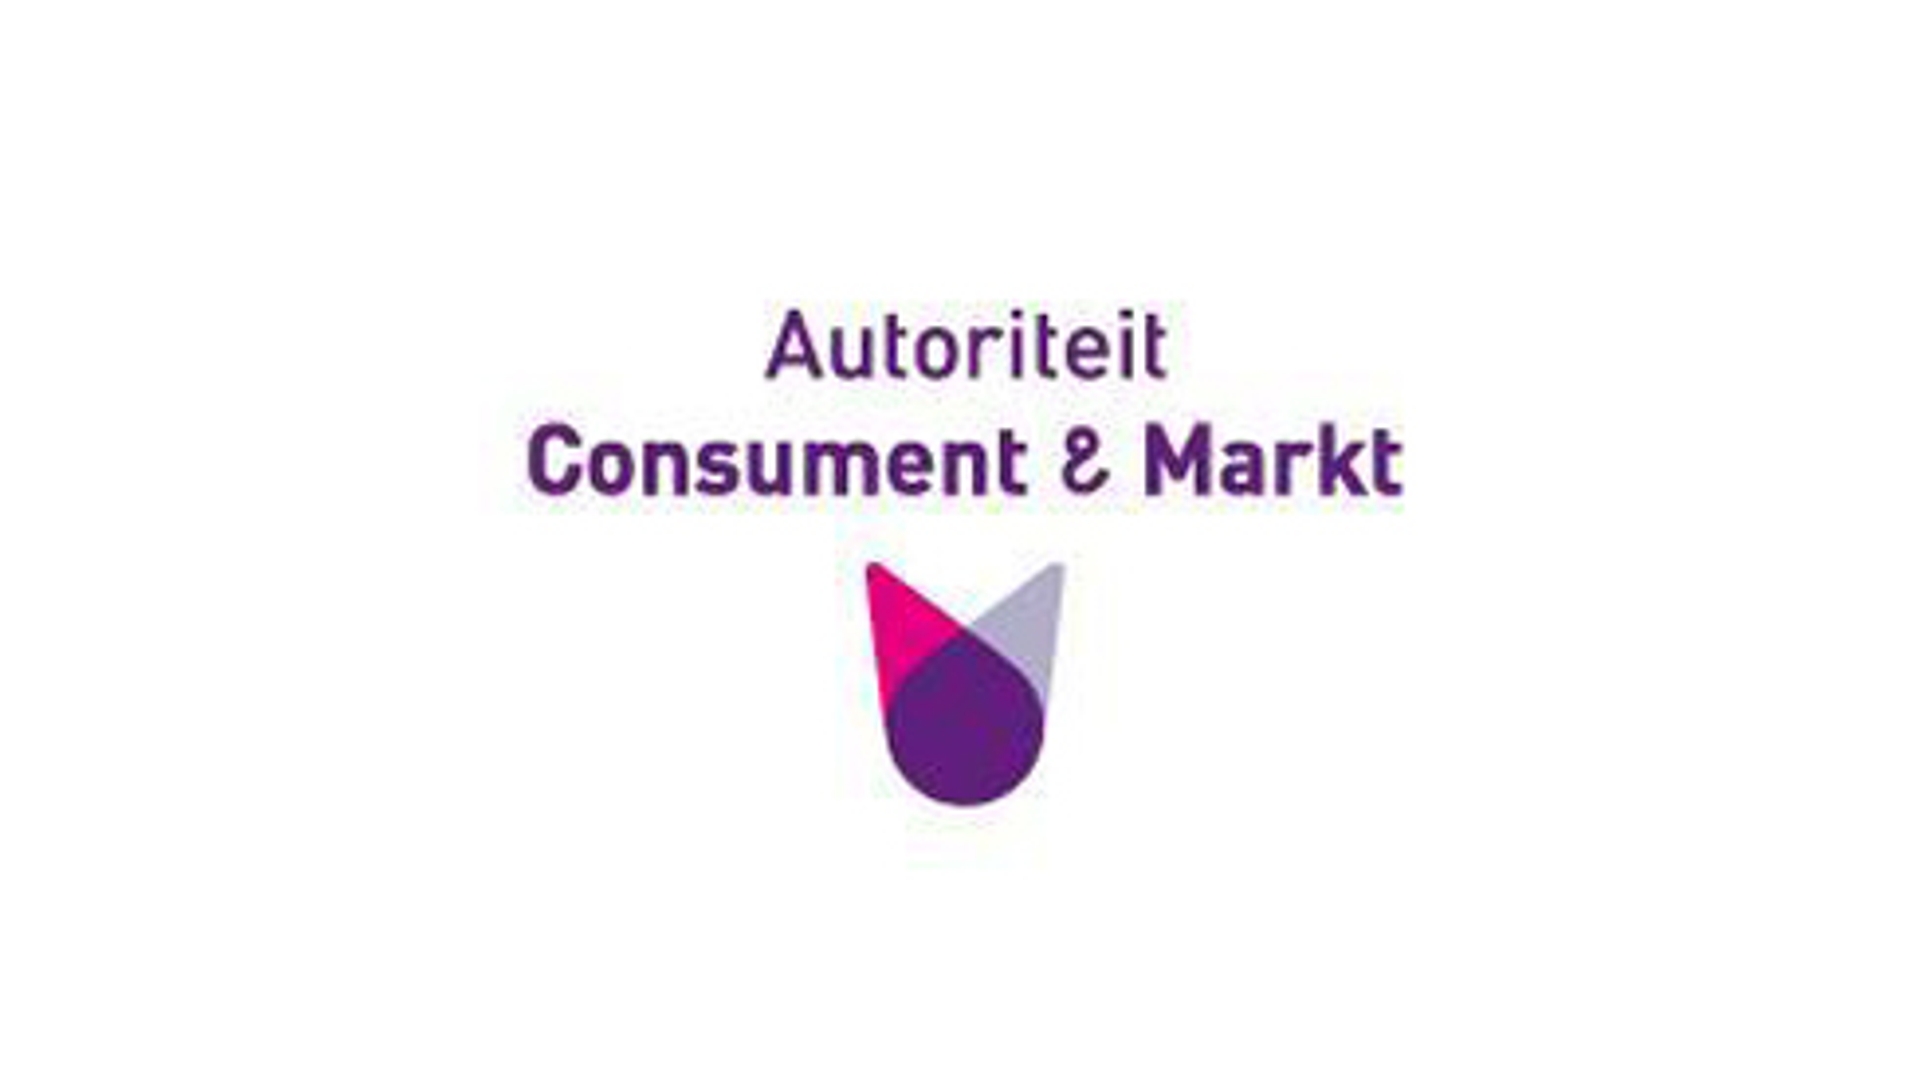 Autoriteit_Consument_en_Markt_03.jpg